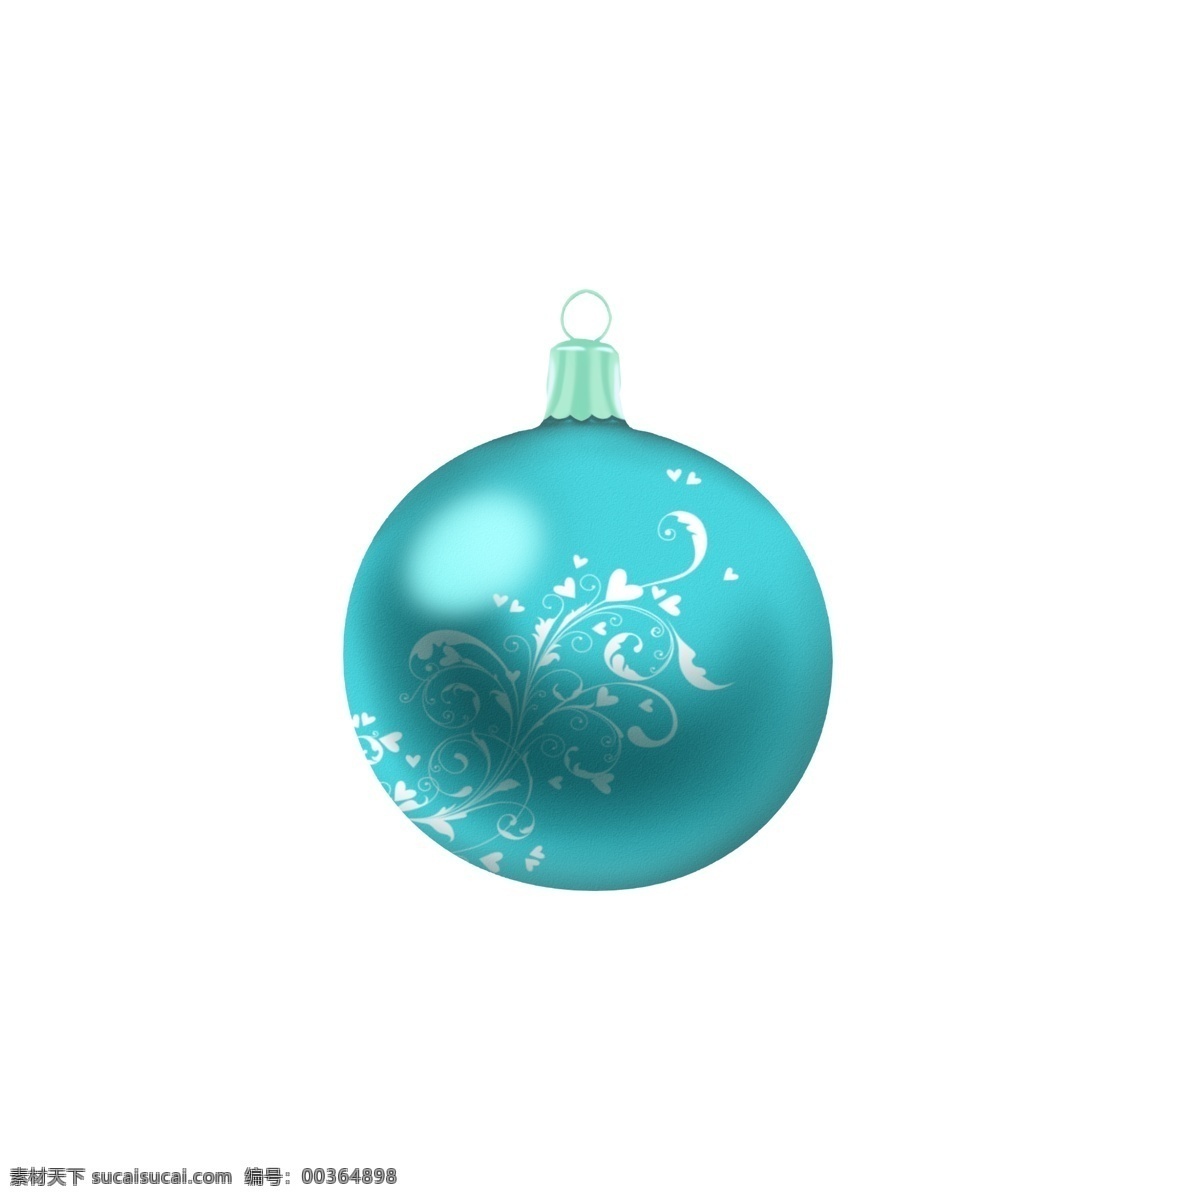 手绘 圣诞 装饰 球 青色 蓝色 花纹 创意 商用 元素 圣诞节 可爱 手绘风 平安夜 白色 配图 写实 可商用